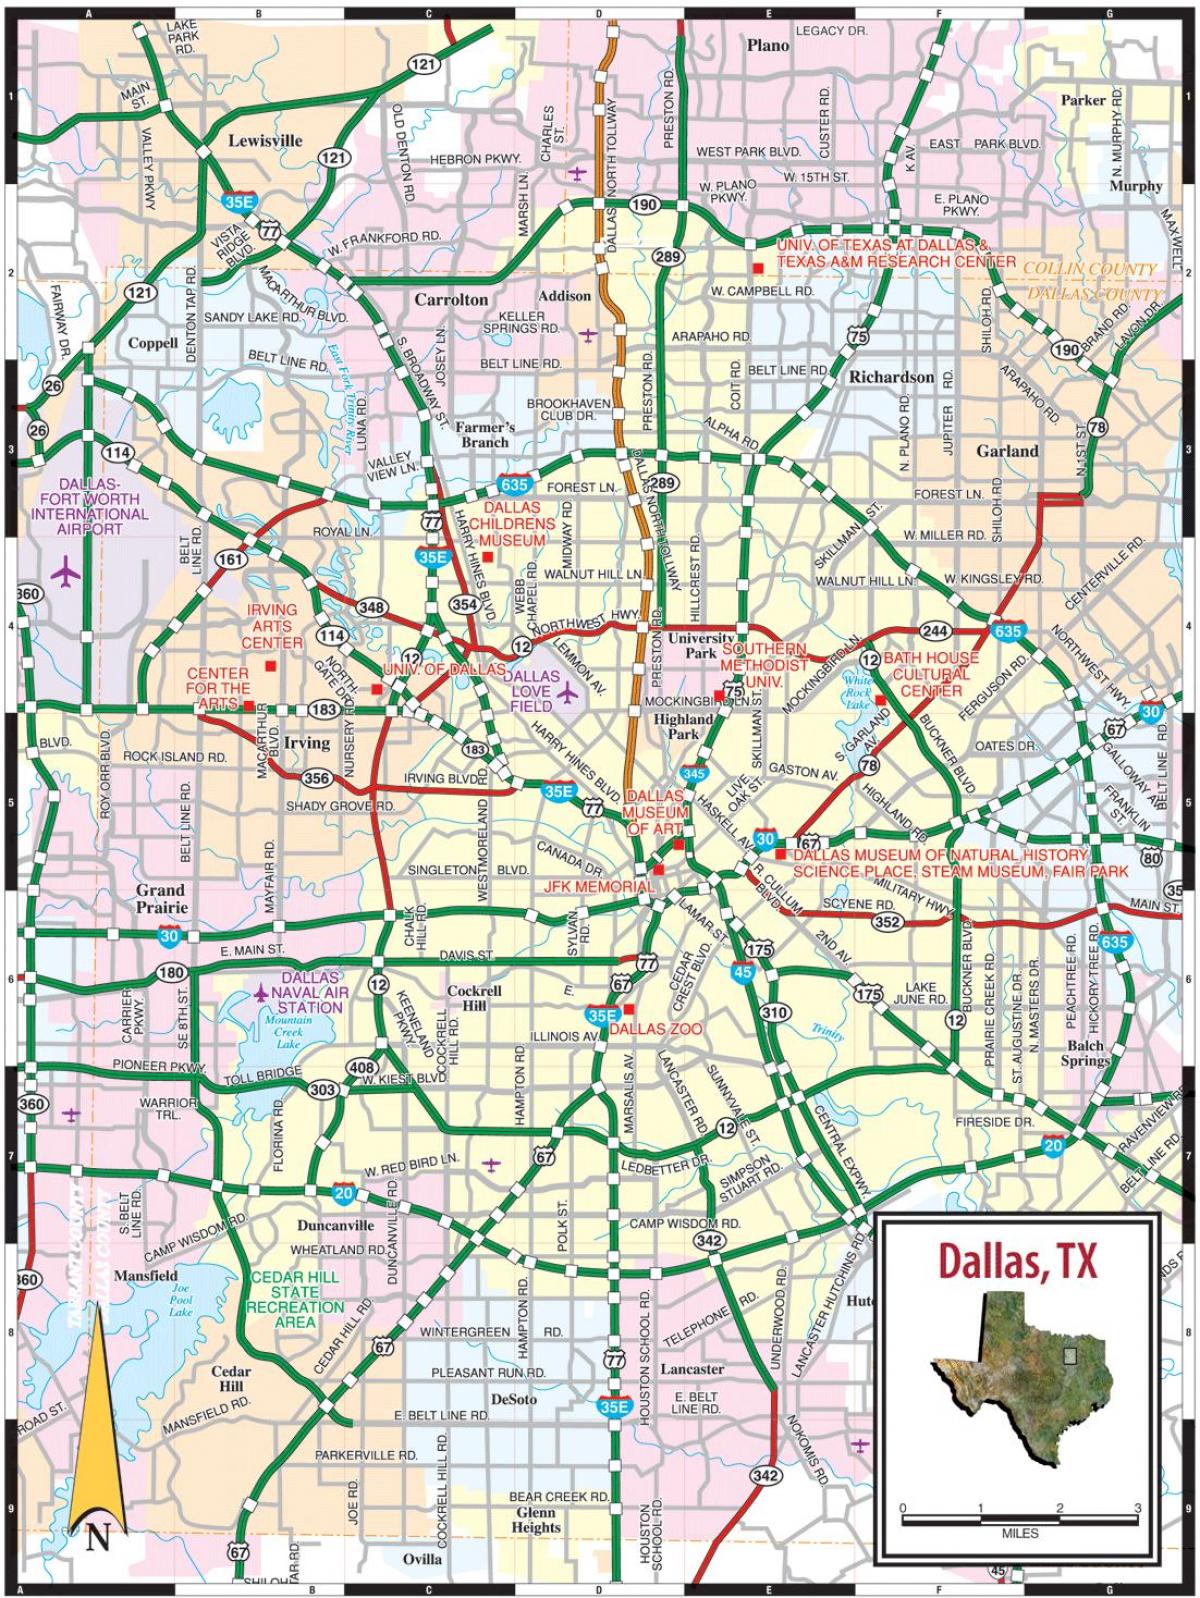 شهر دالاس نقشه